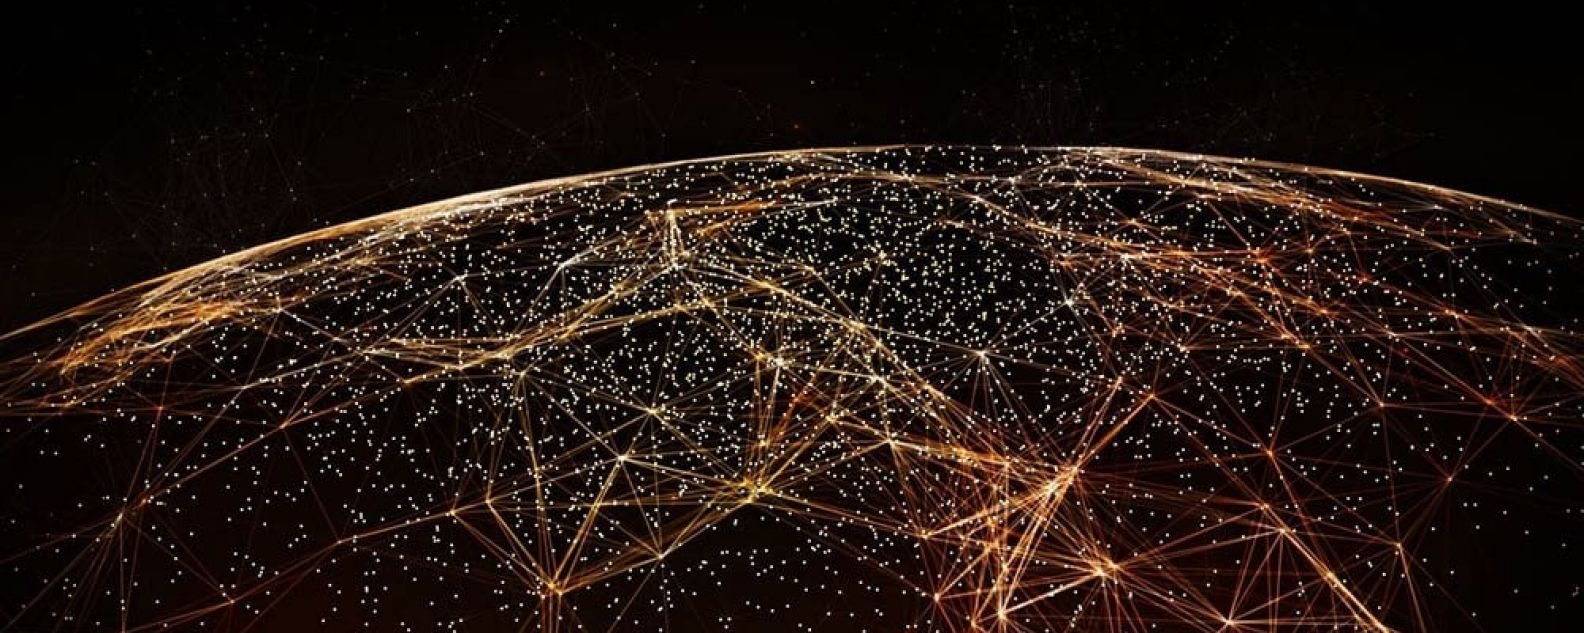 Immagine astratta del mondo con reti collegate